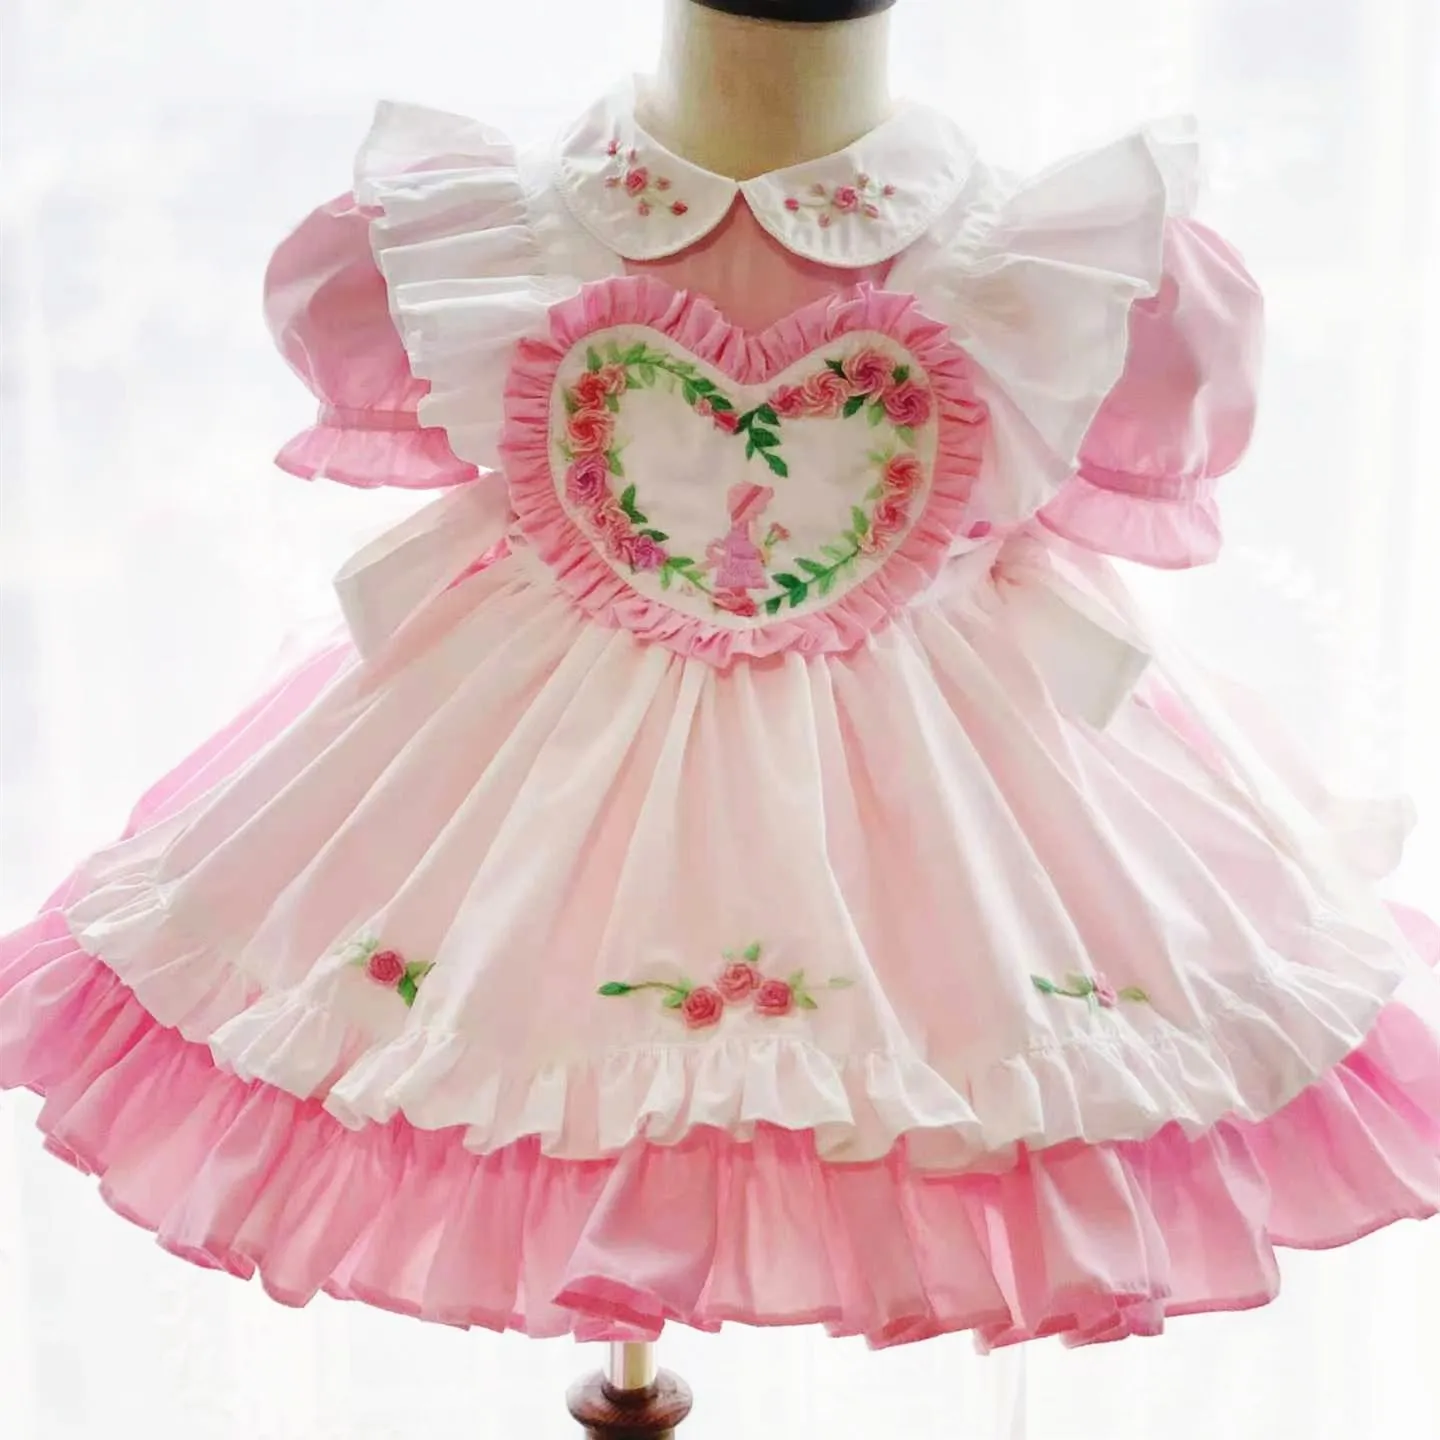 

Женское летнее винтажное платье ручной работы, Розовое Бальное Платье принцессы в стиле "Лолита" с цветочной вышивкой для дня рождения, праз...